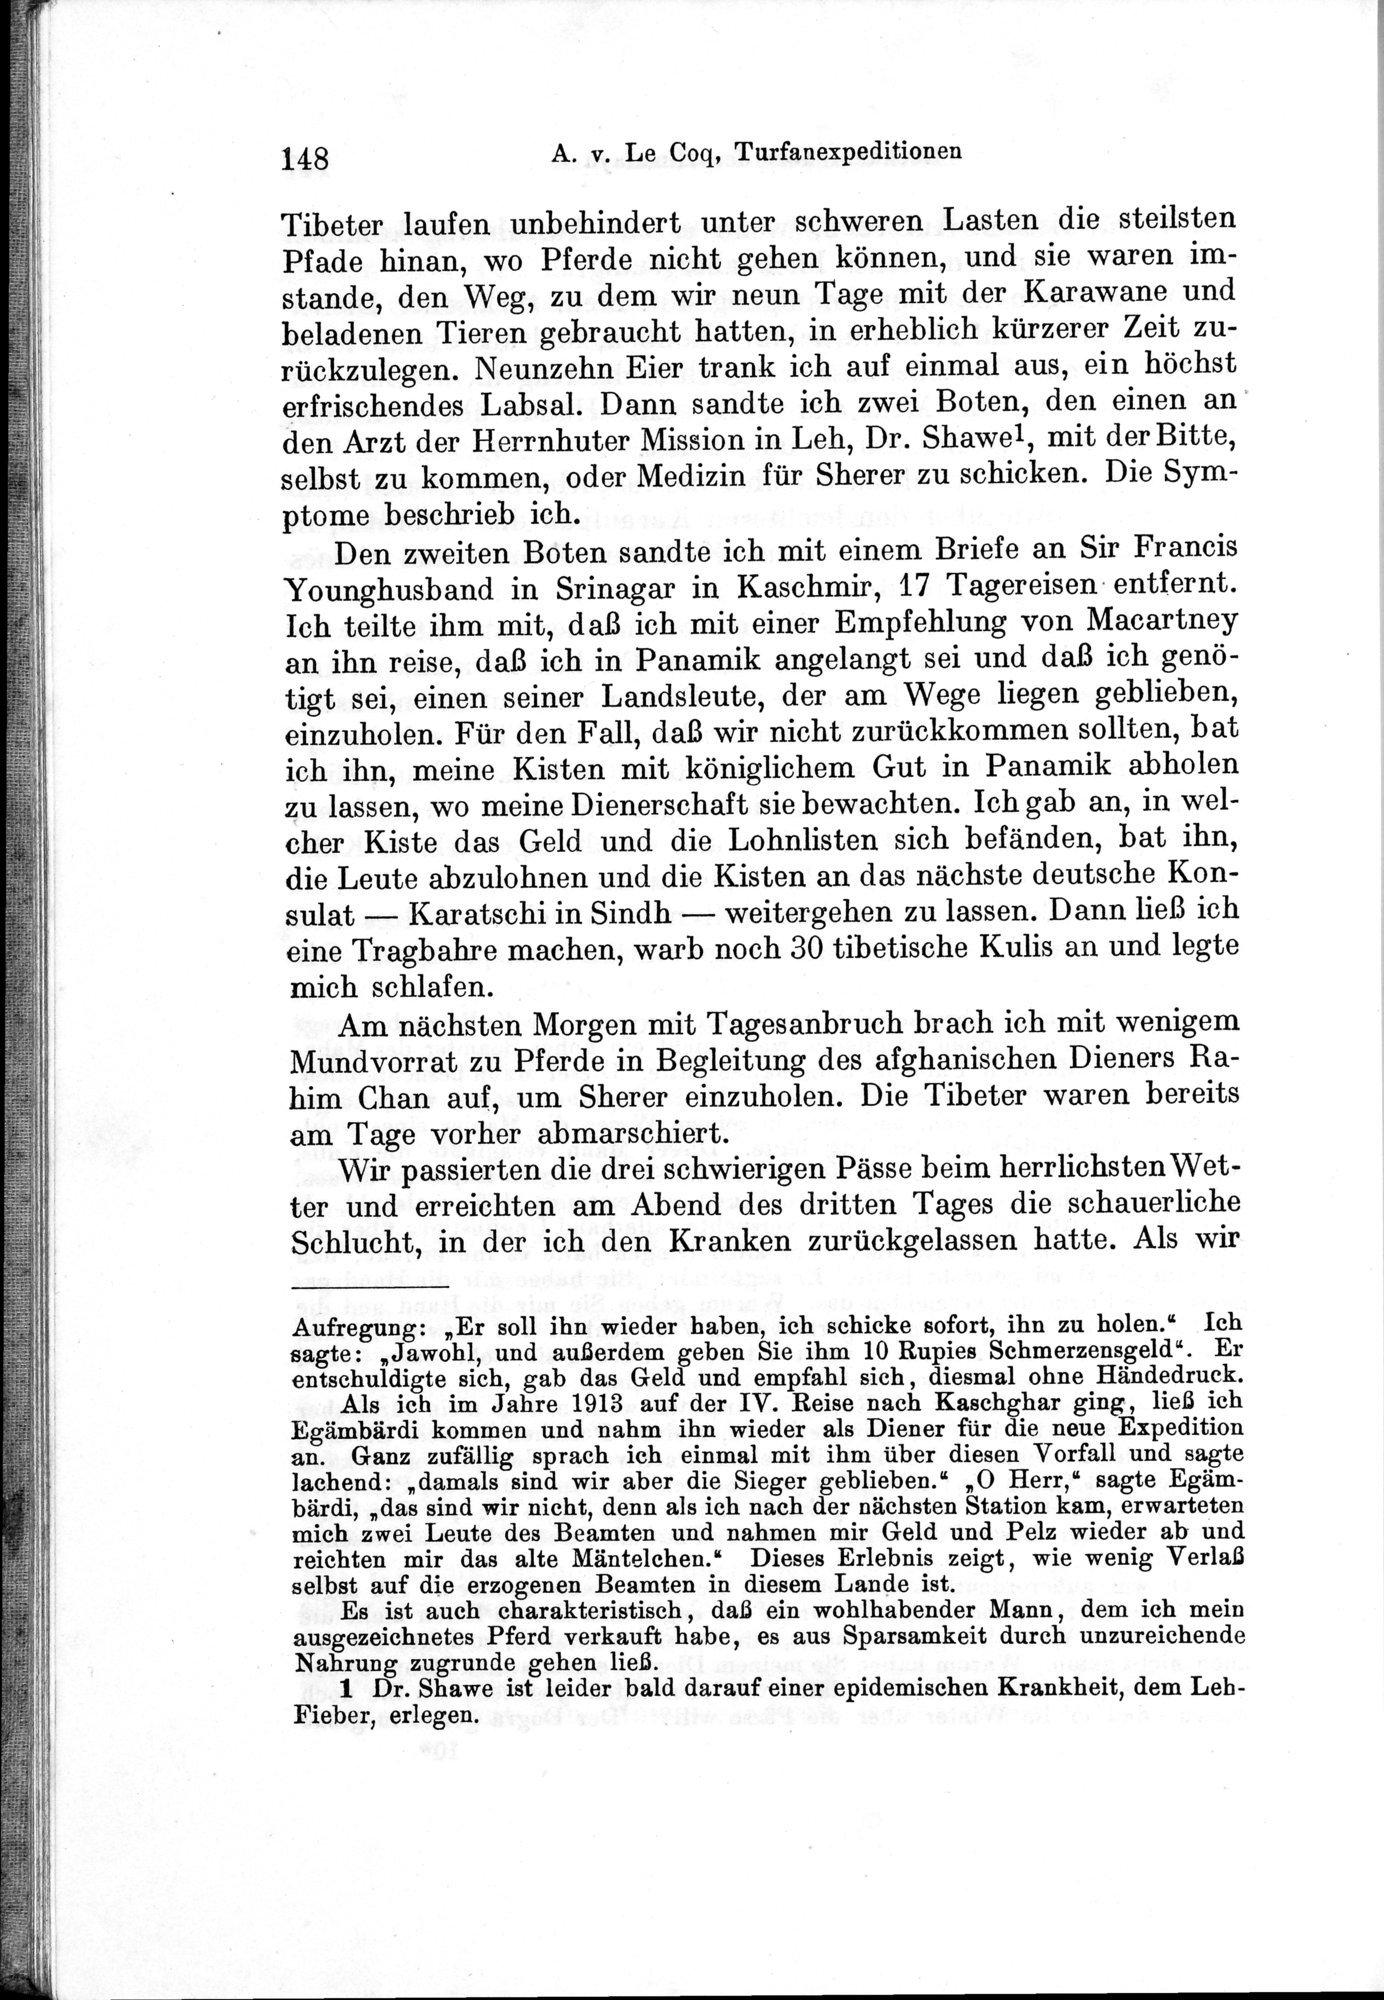 Auf Hellas Spuren in Ostturkistan : vol.1 / Page 212 (Grayscale High Resolution Image)